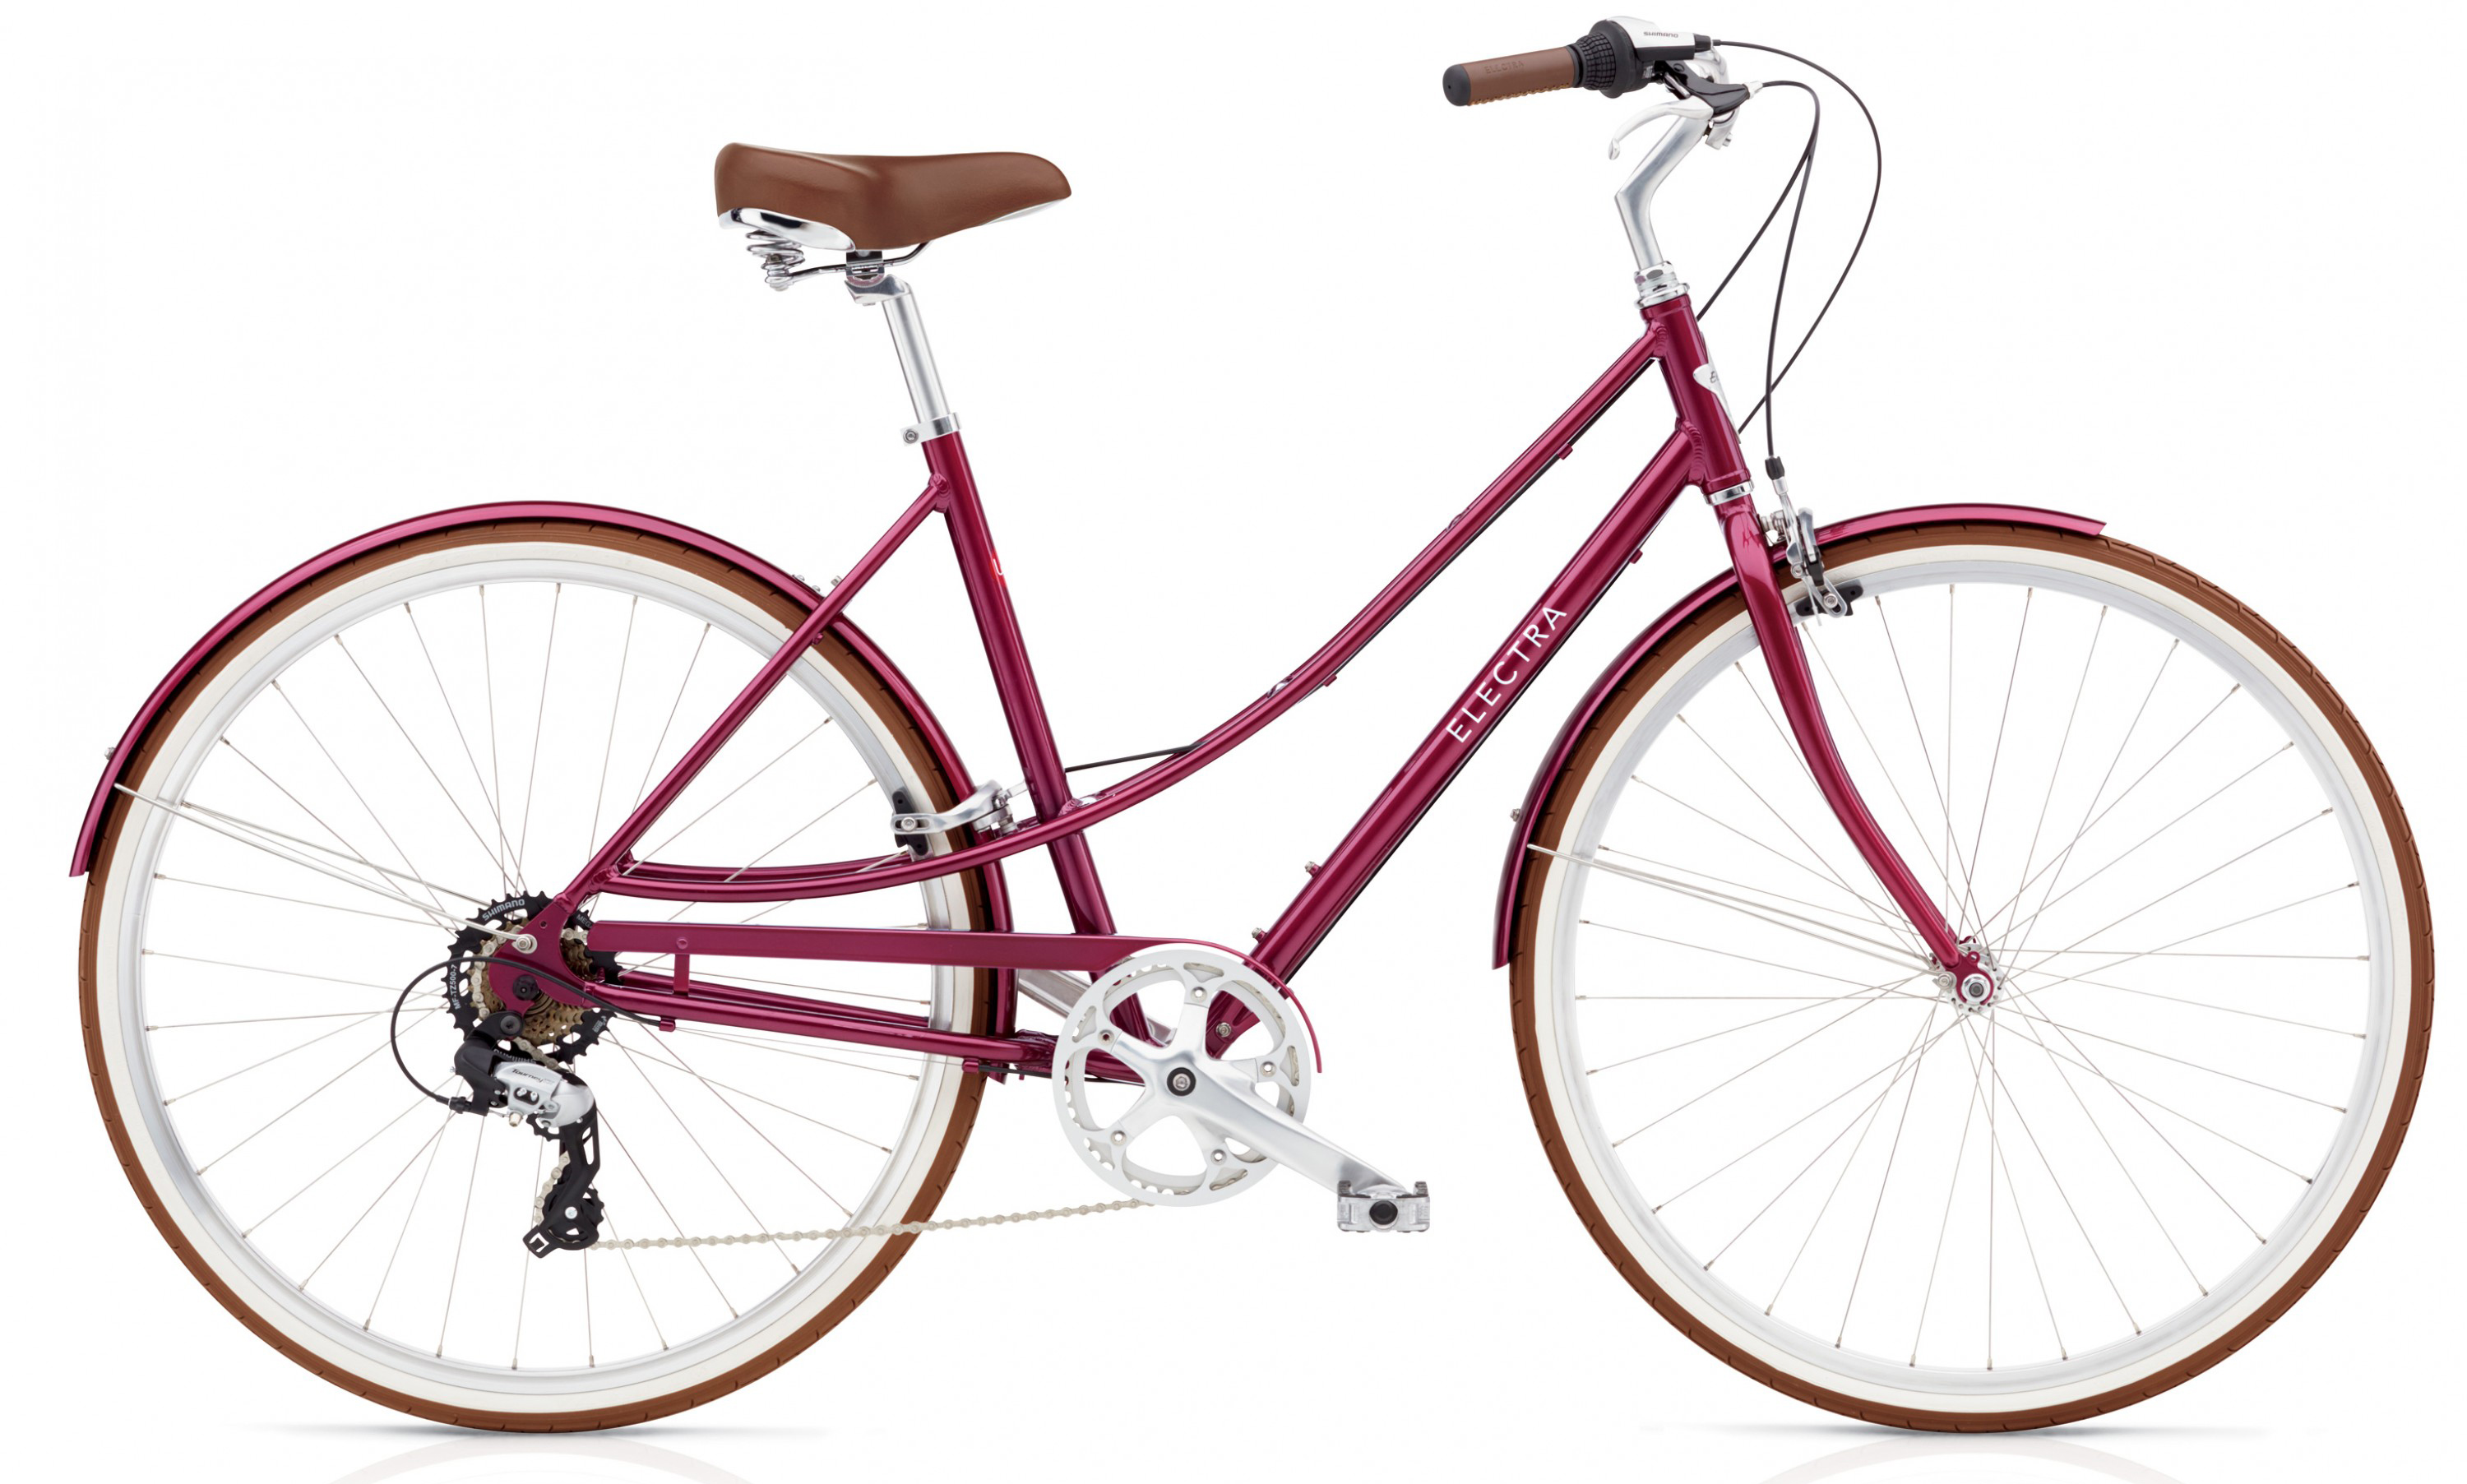  Отзывы о Женском велосипеде Electra Loft 7D 2019